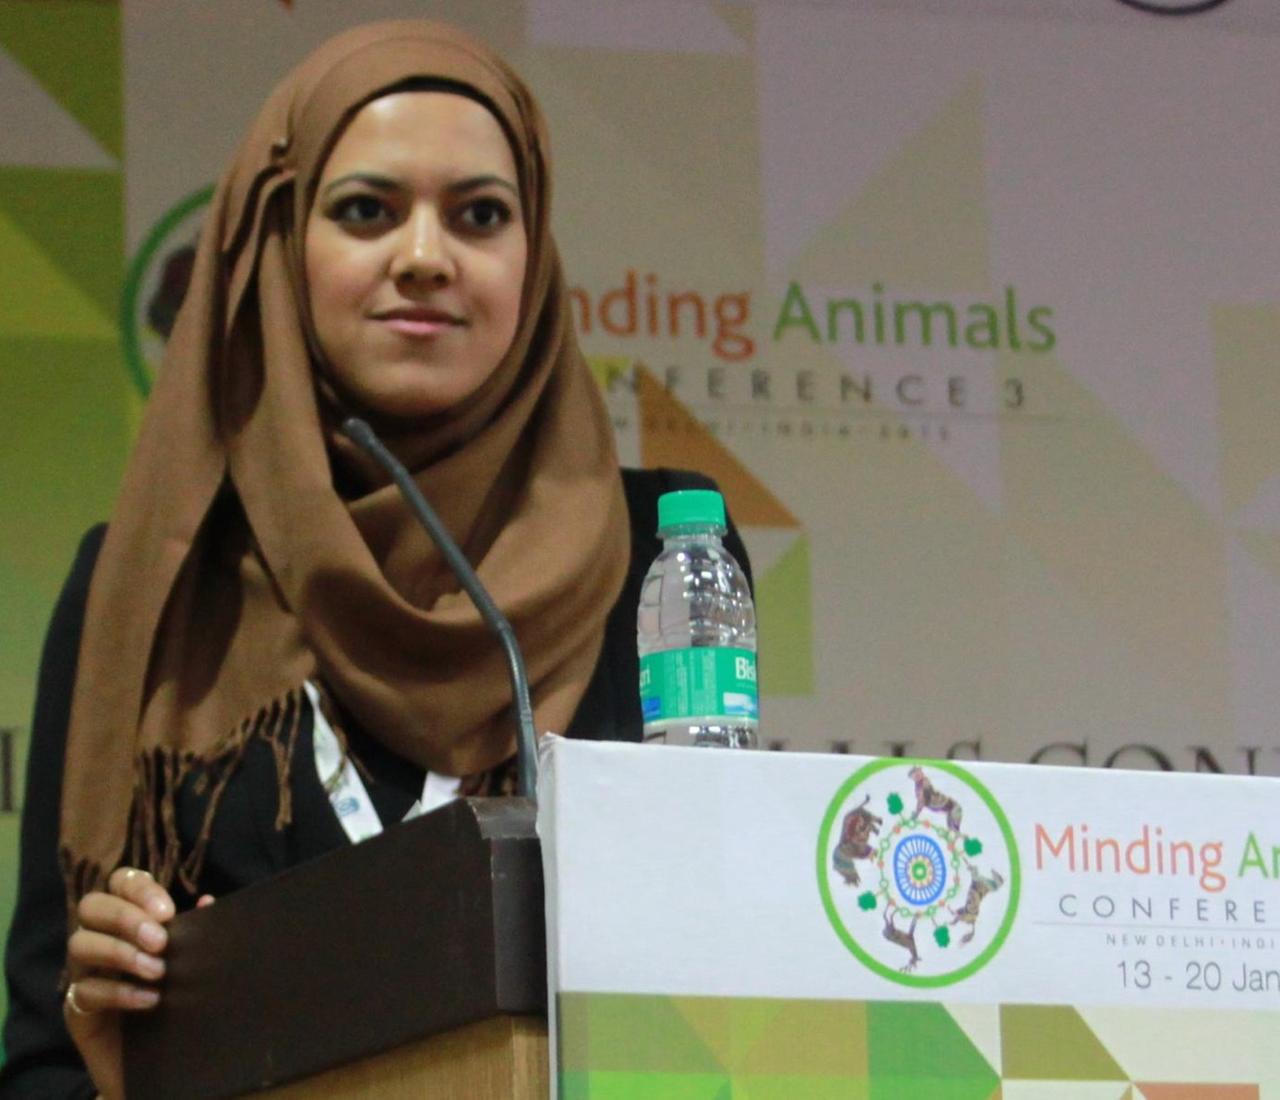 El Maaroufi am Rednerpult mit Werbung für eine Konferenz zum Thema "Minding Animals" im Hintergrund.